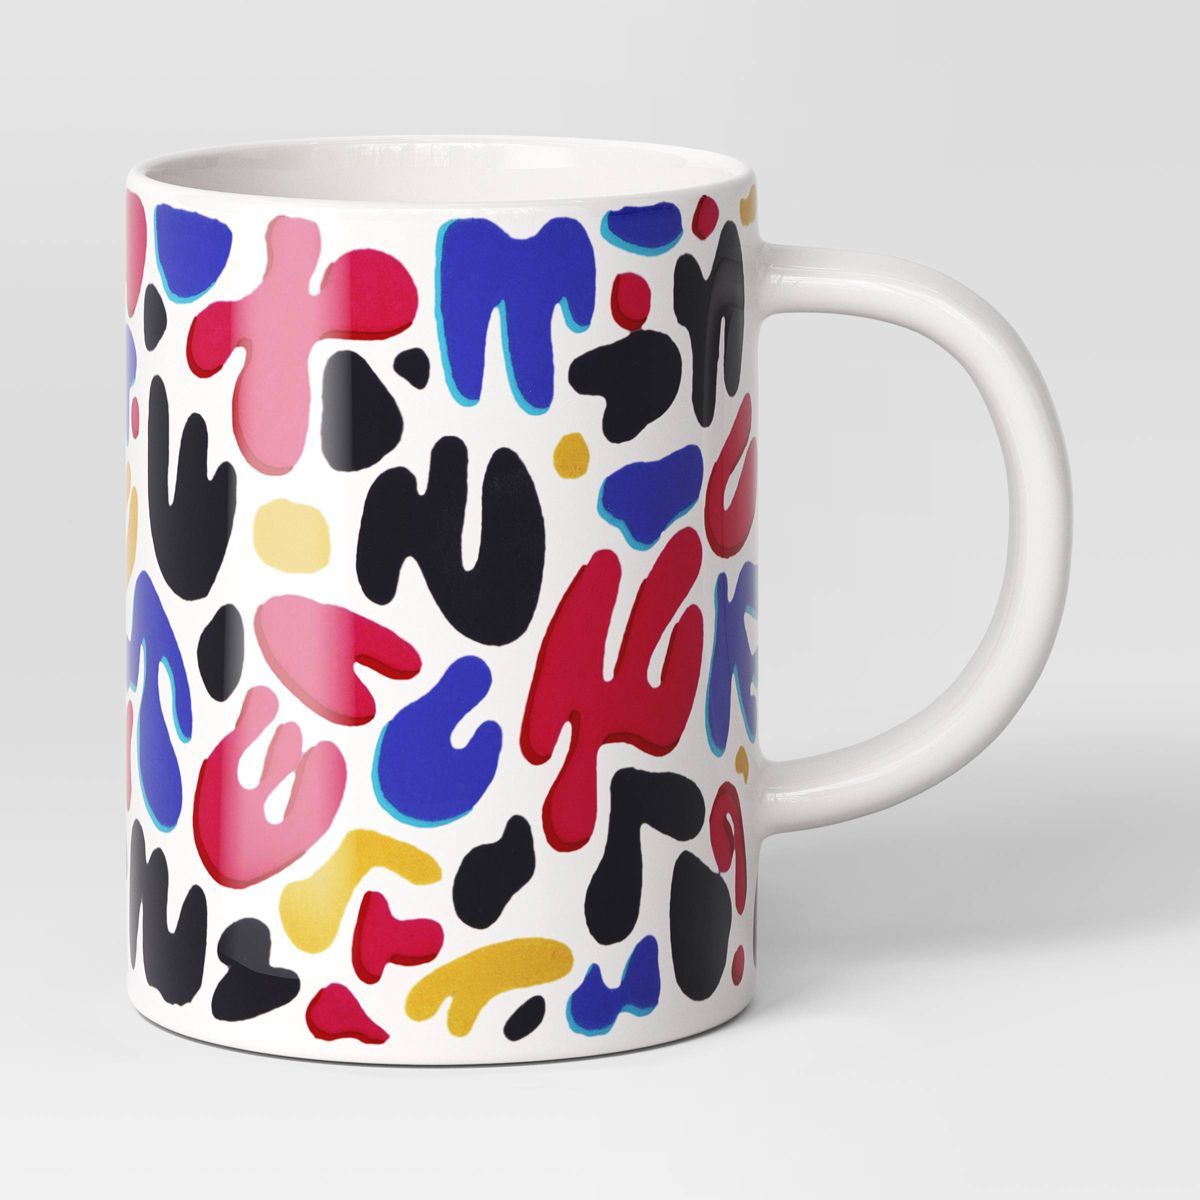 15oz Ceramic Mug - Room Essentials™ | Target